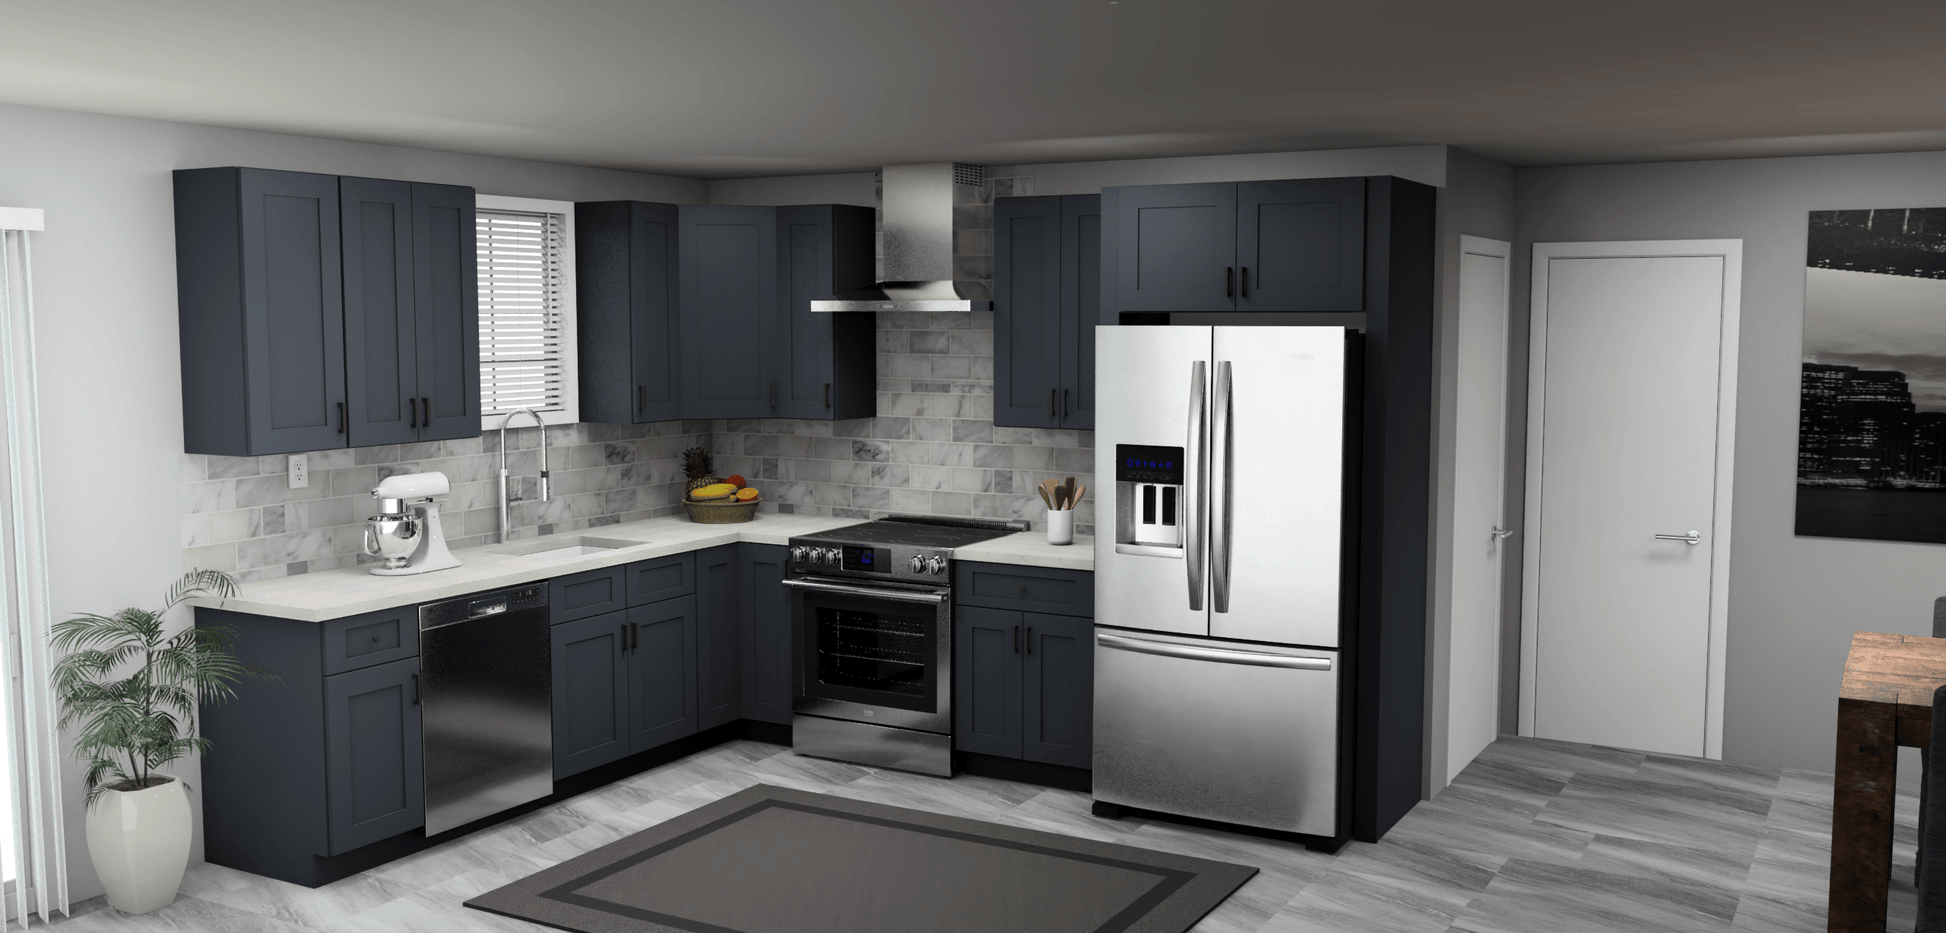 Fabuwood Allure Galaxy Indigo 9 x 11 L Shaped Kitchen Main Layout Photo